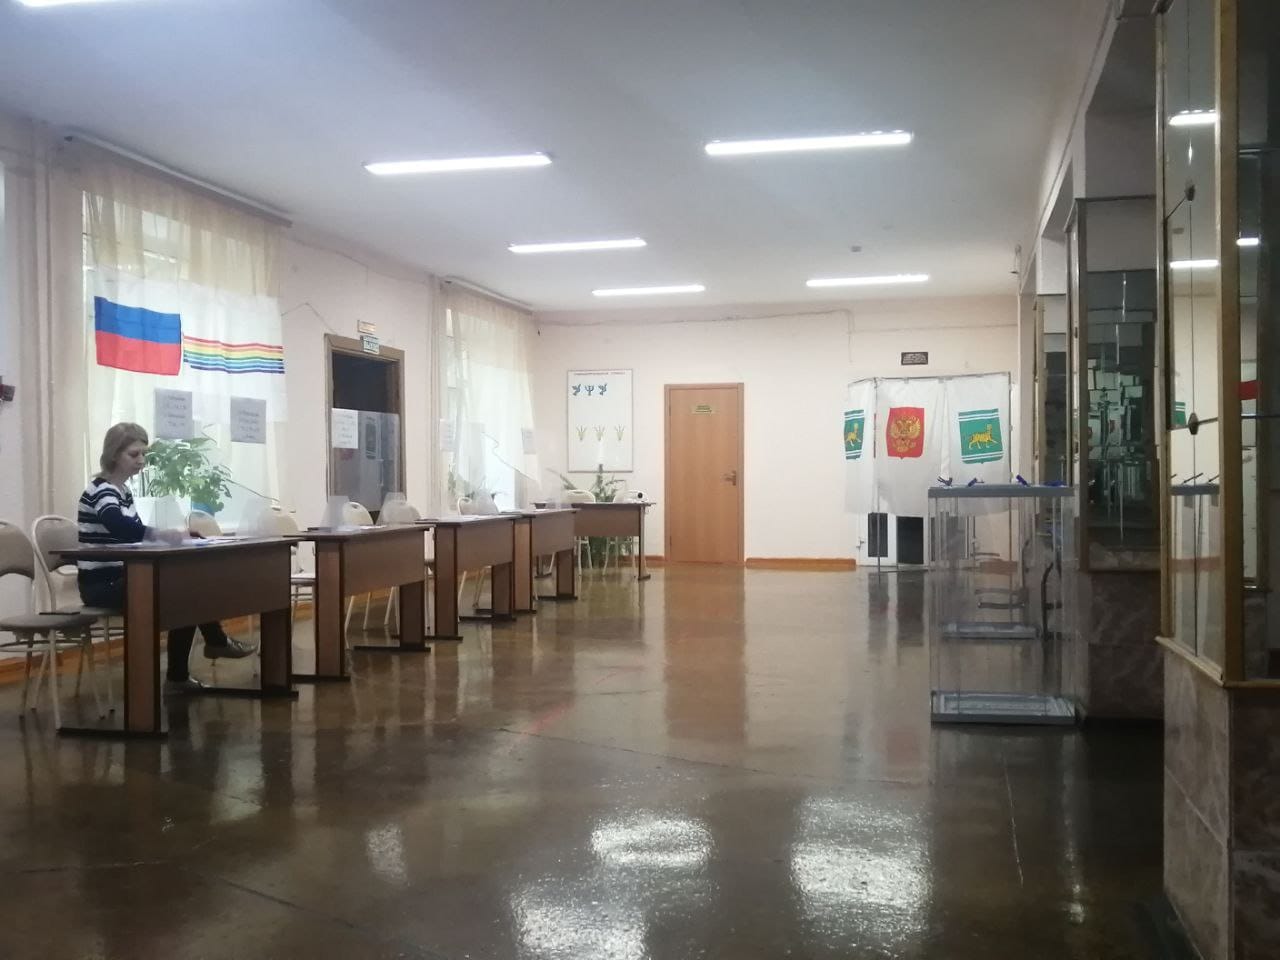 25 избирательных участков открылись в Еврейской автономной области